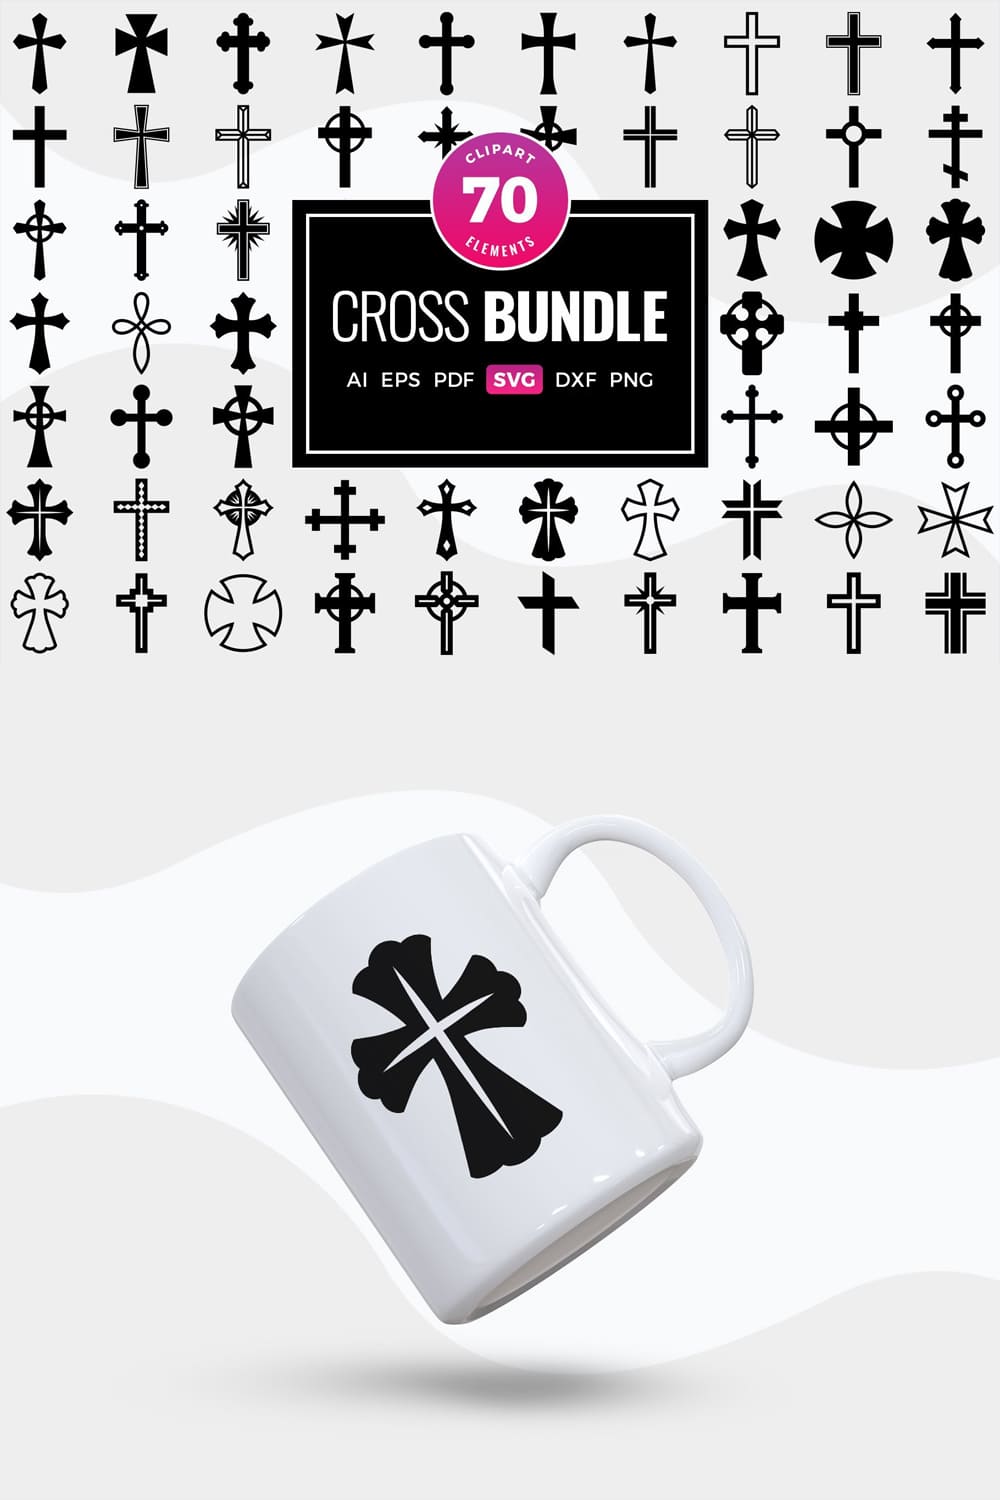 Cross svg bundle crosses clipart - pinterest image preview.